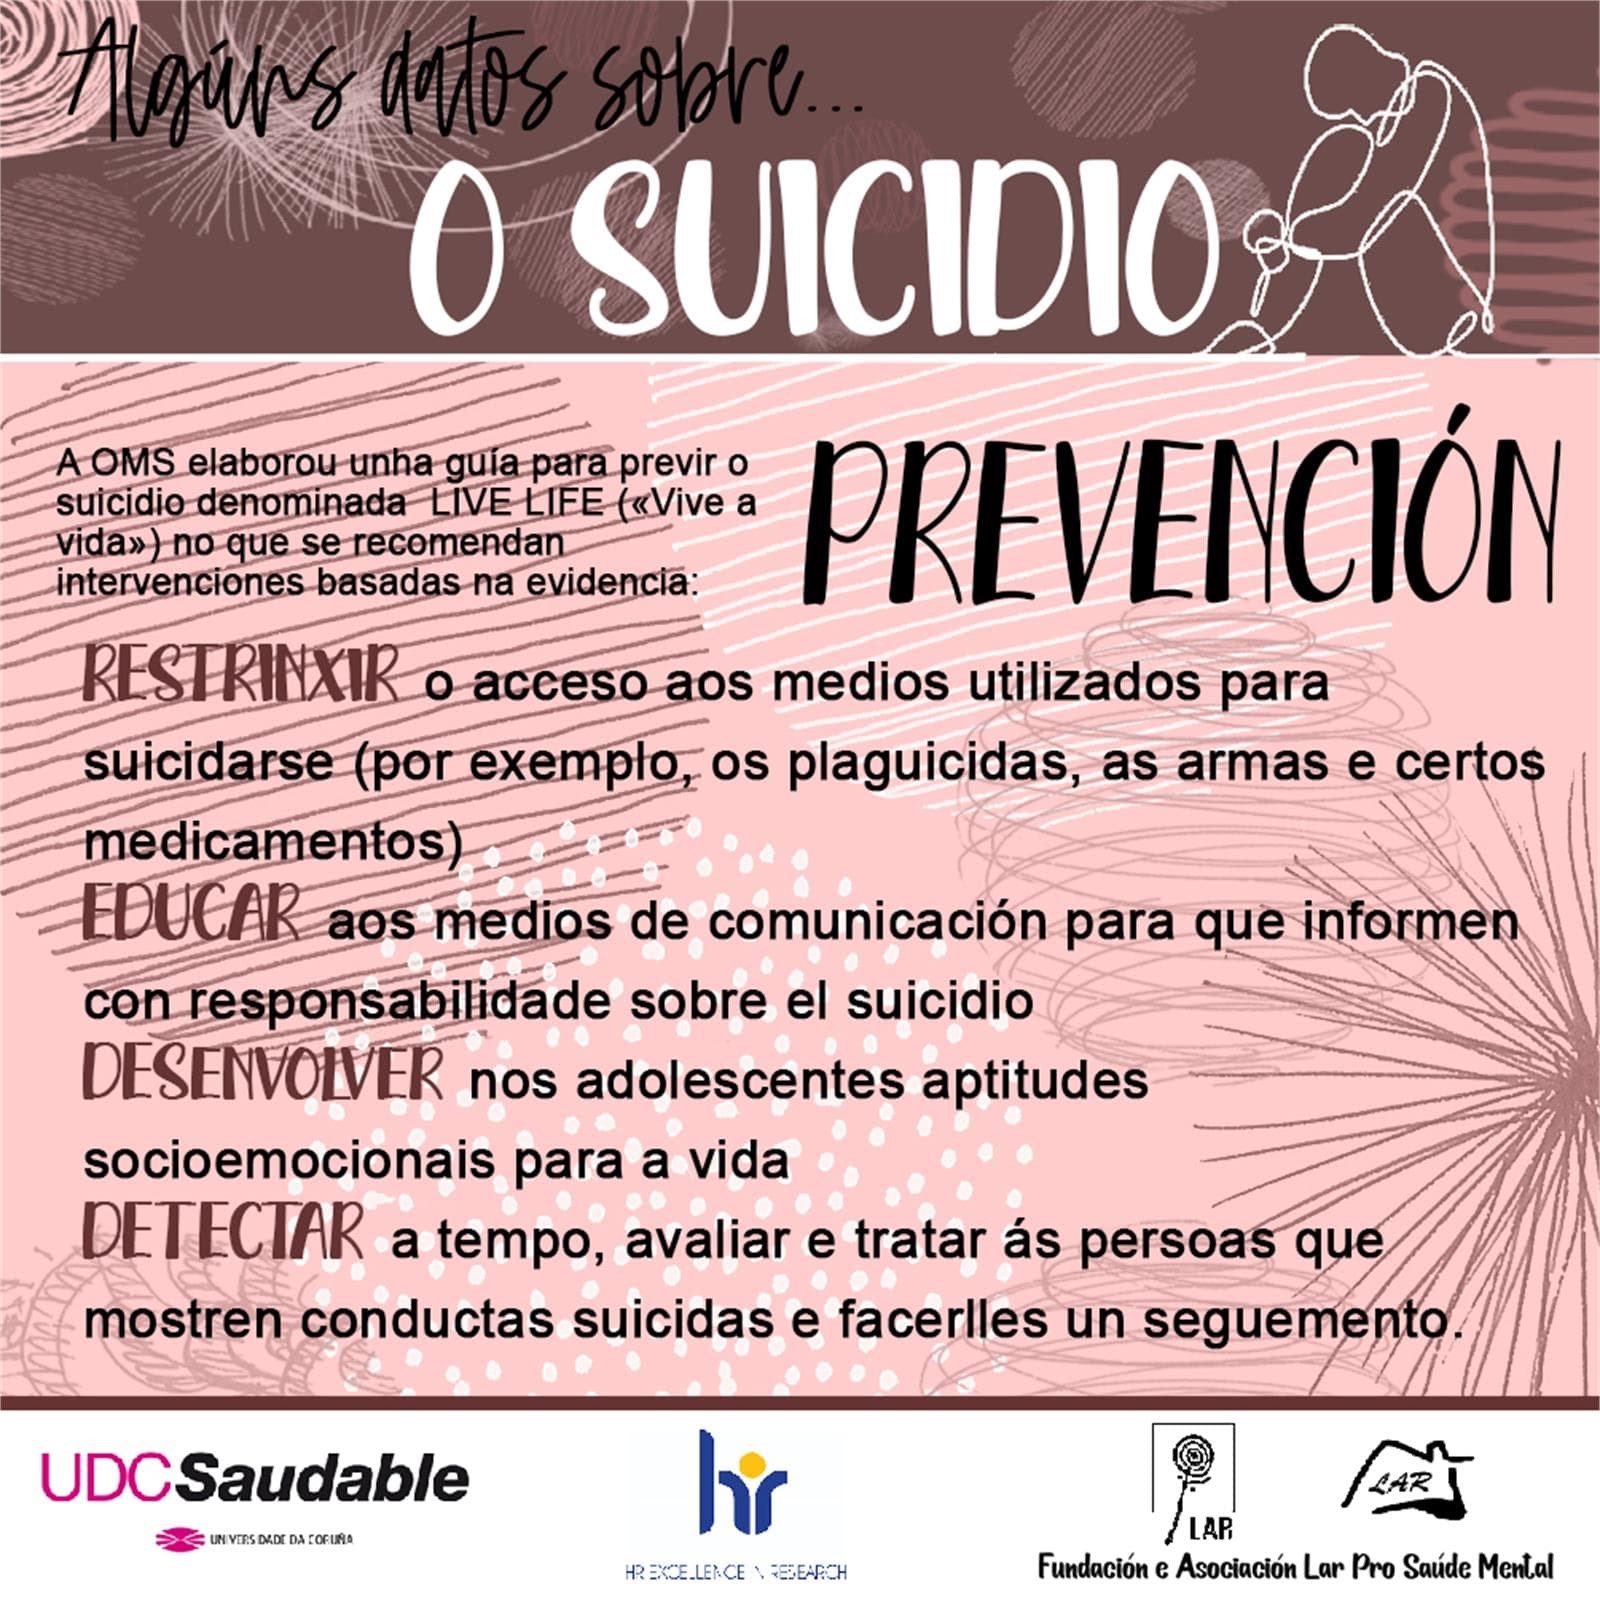 Algunos Datos sobre Suicidio... - LAR Pro Salud Mental - Imagen 6